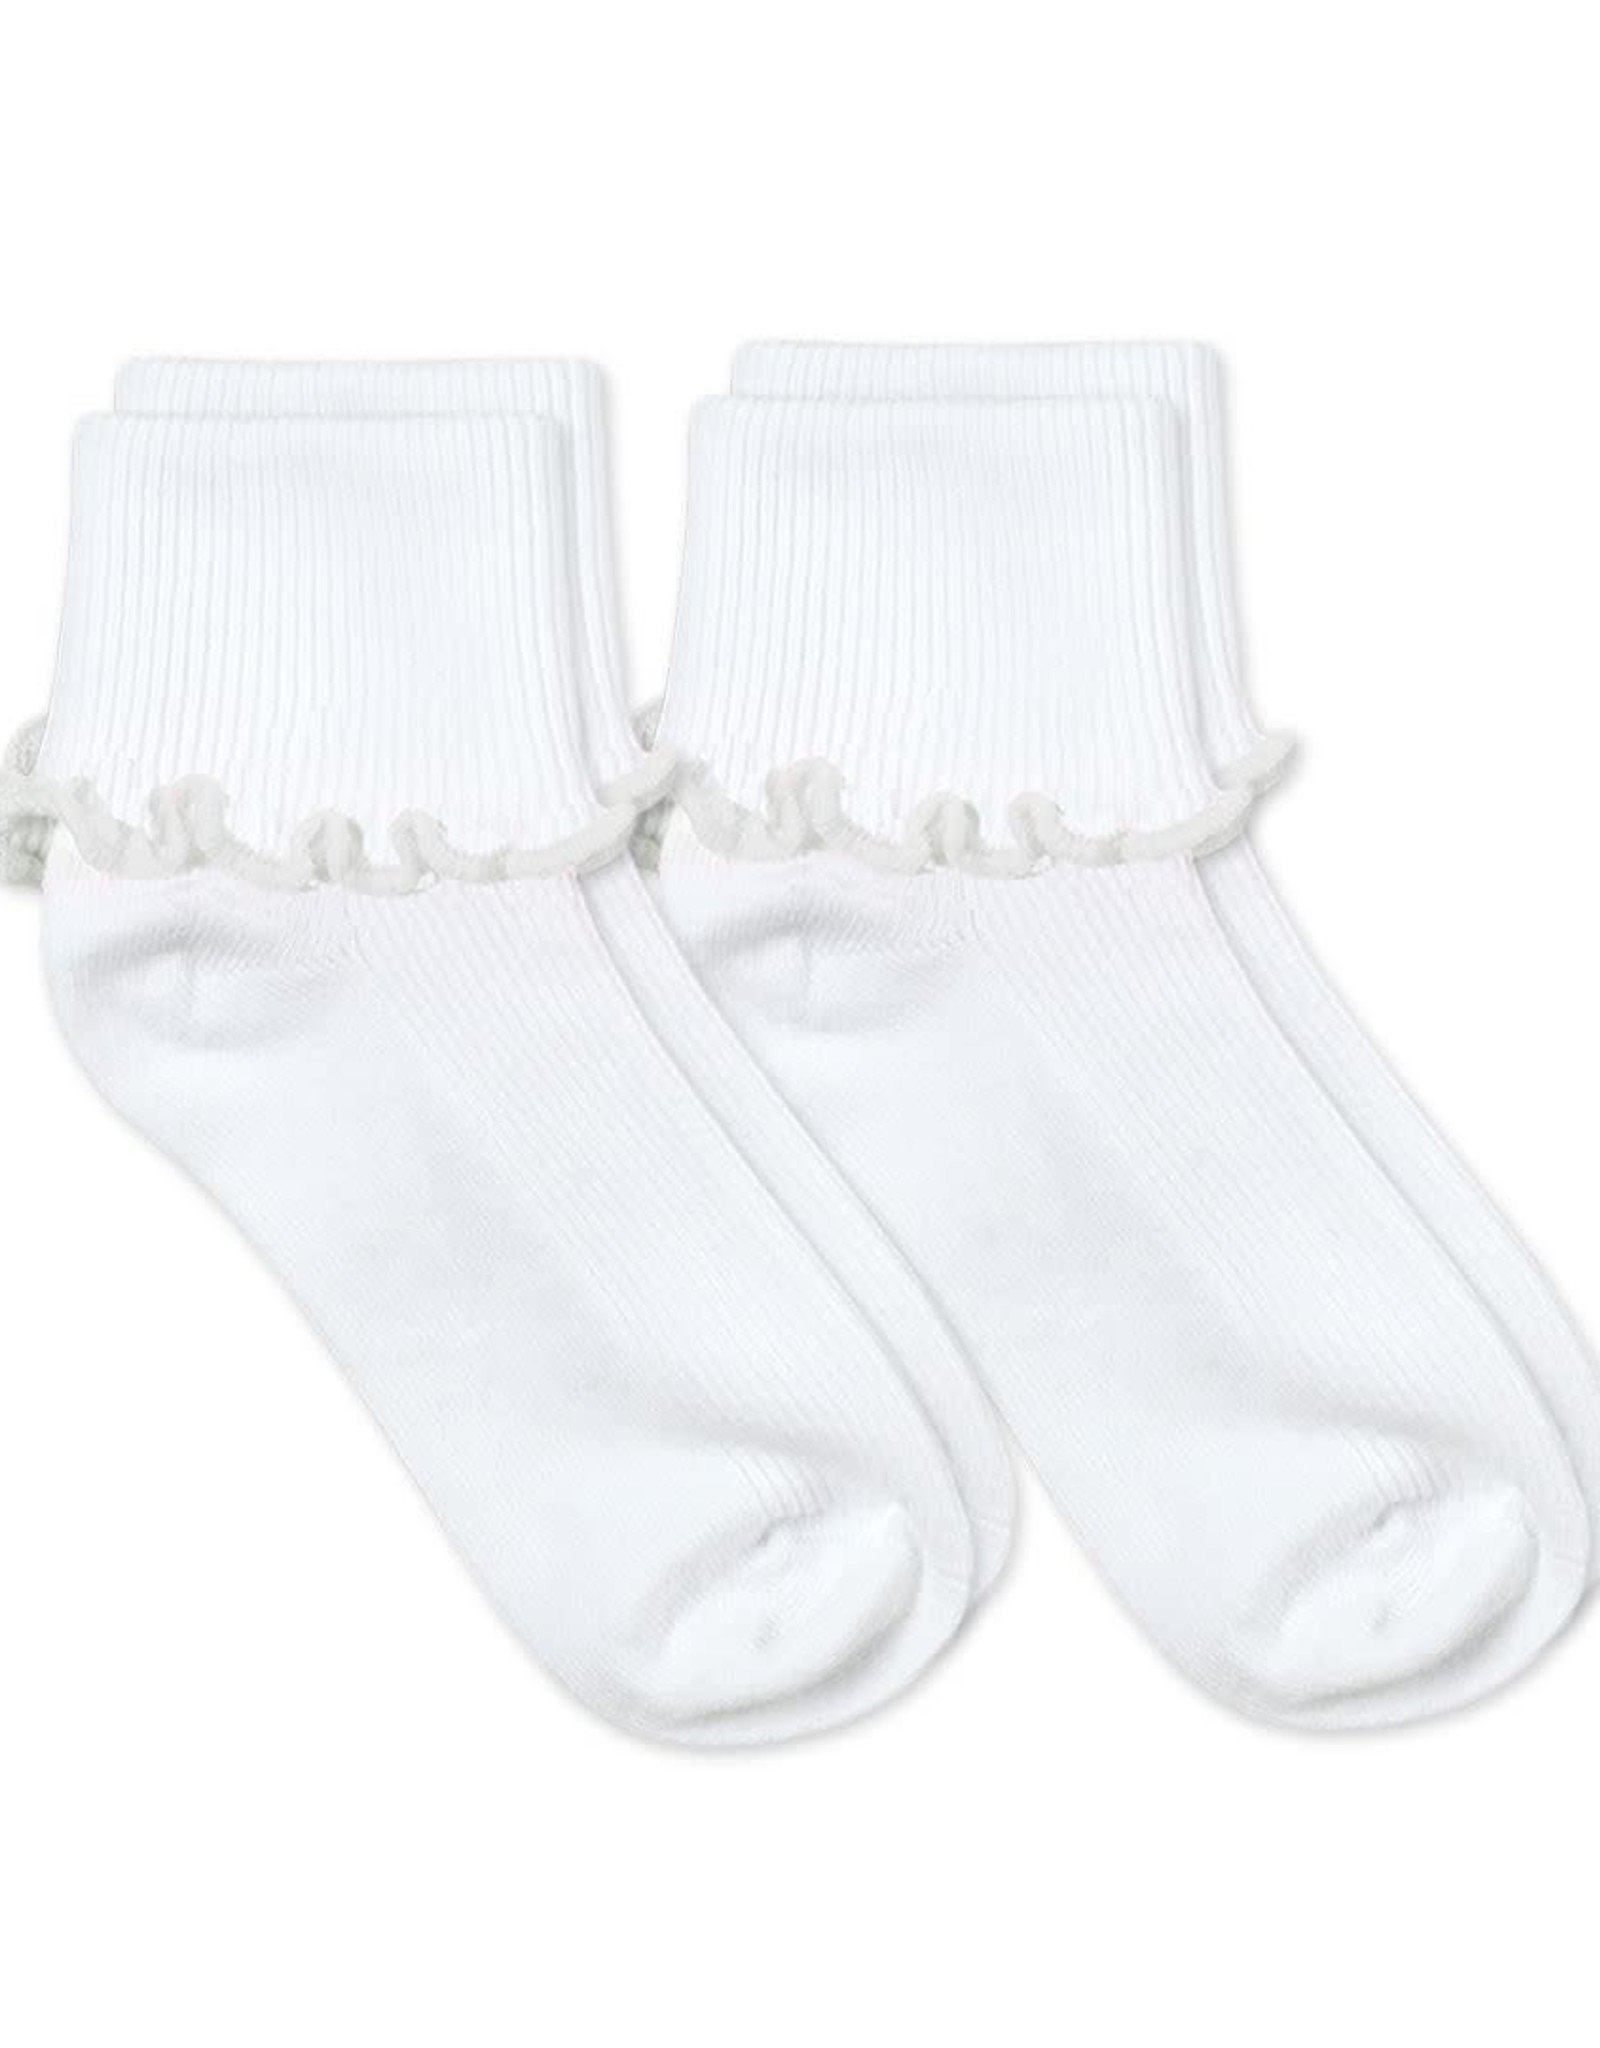 Jefferies Cuff Socks 2 Pair Pack, White